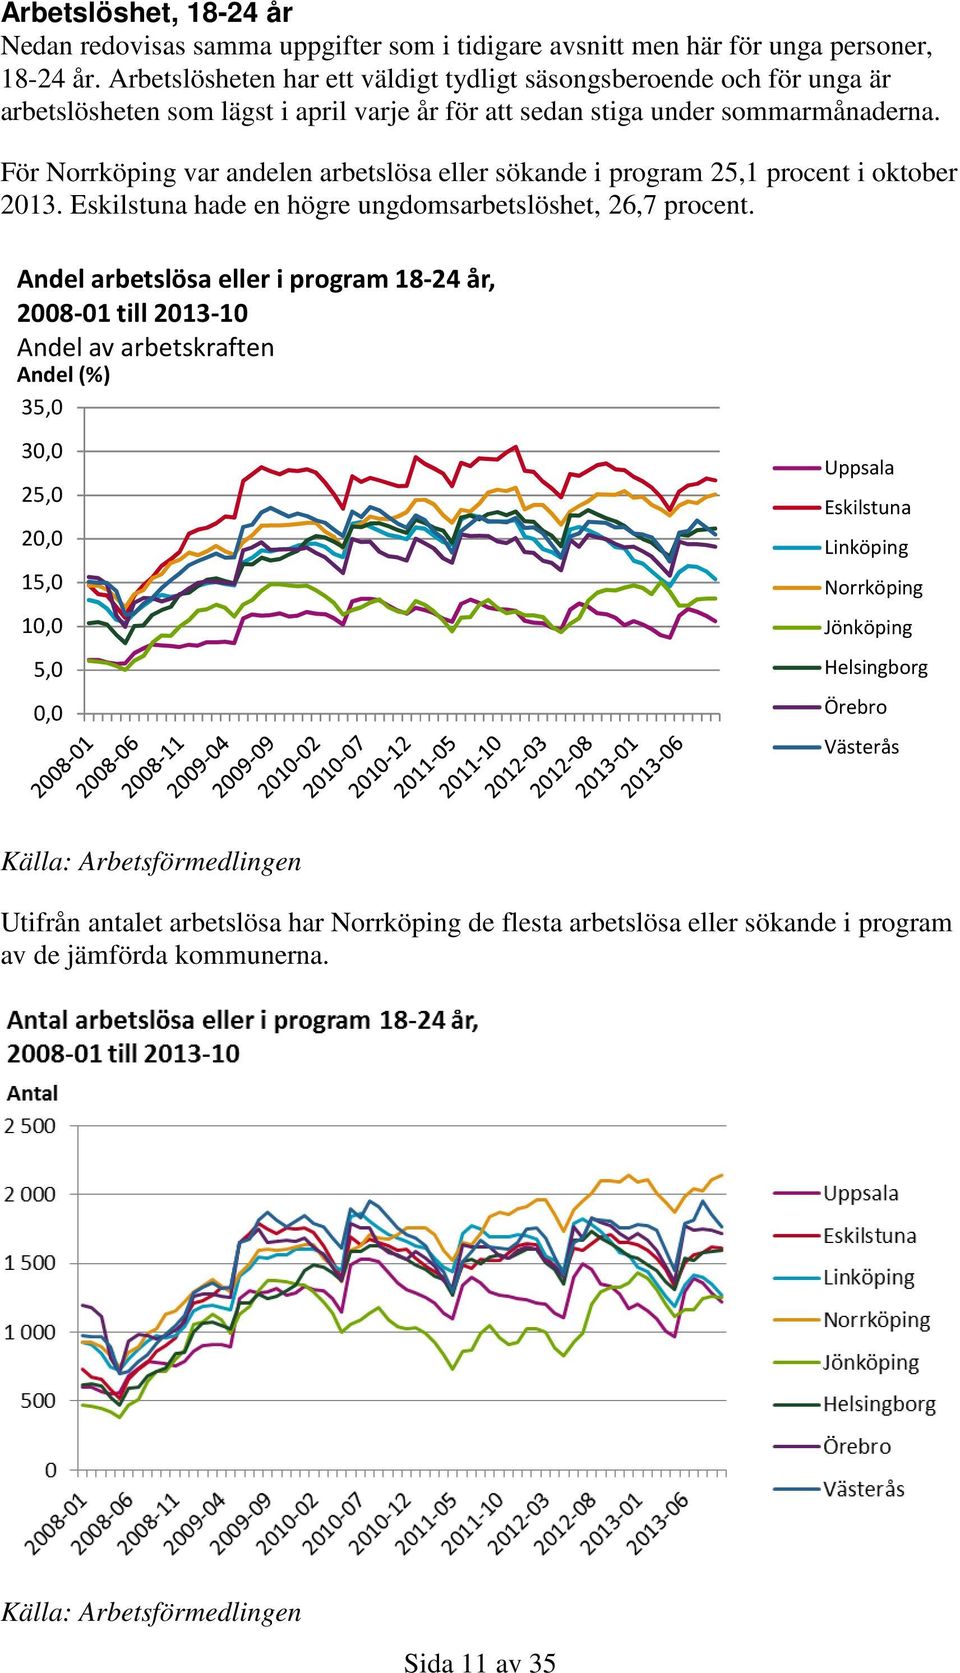 För Norrköping var andelen arbetslösa eller sökande i program 25,1 procent i oktober 2013. Eskilstuna hade en högre ungdomsarbetslöshet, 26,7 procent.